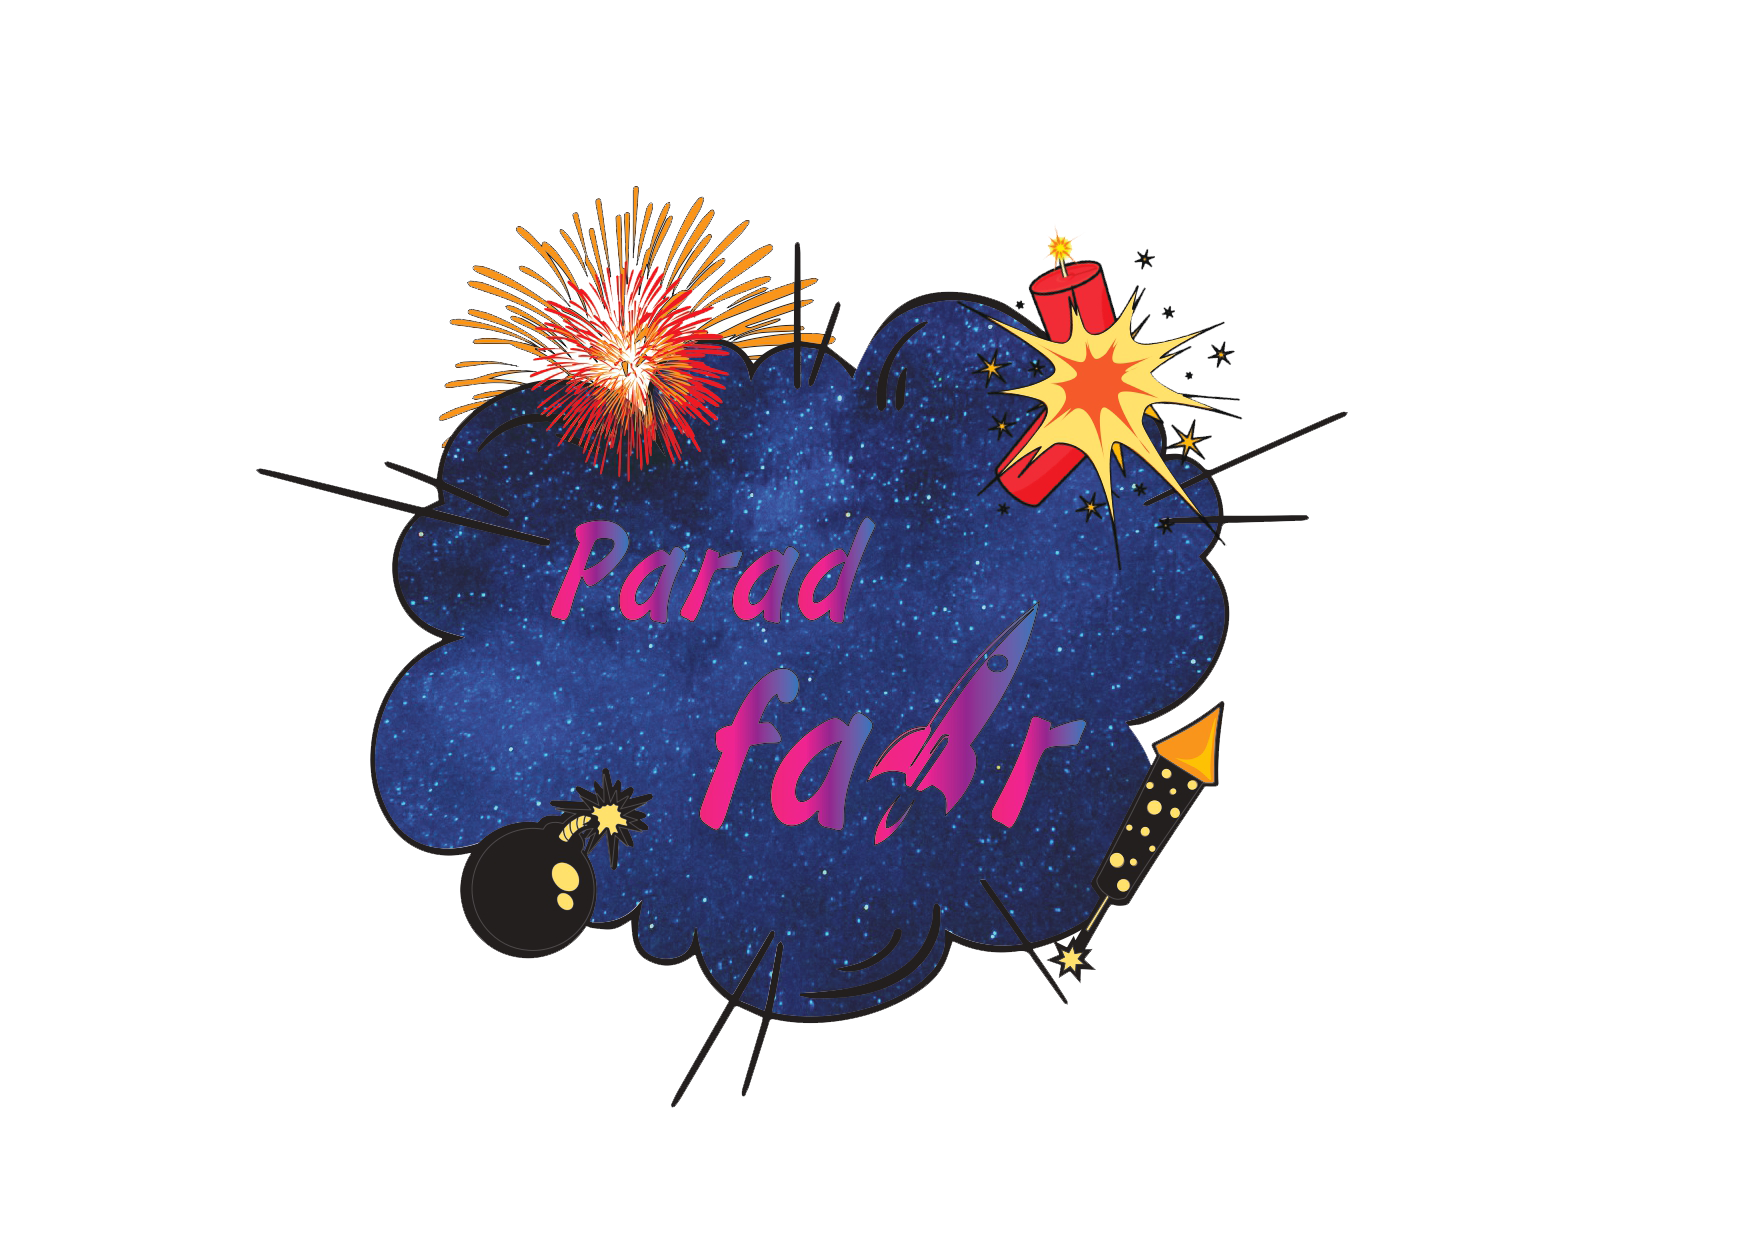 Parad_fair